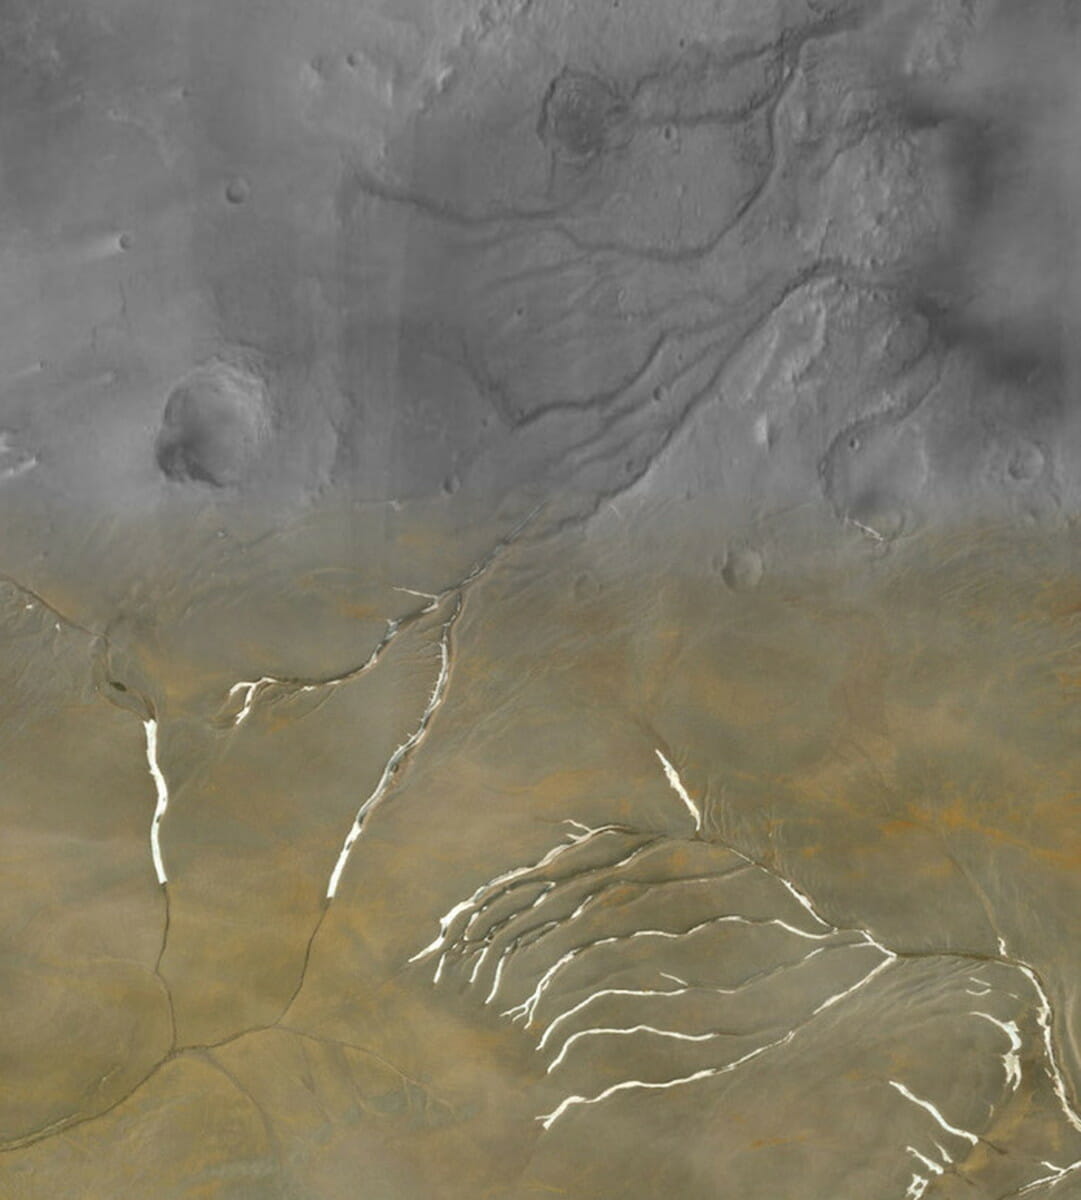 火星の谷とよく似た北極圏のデボン島にある流路